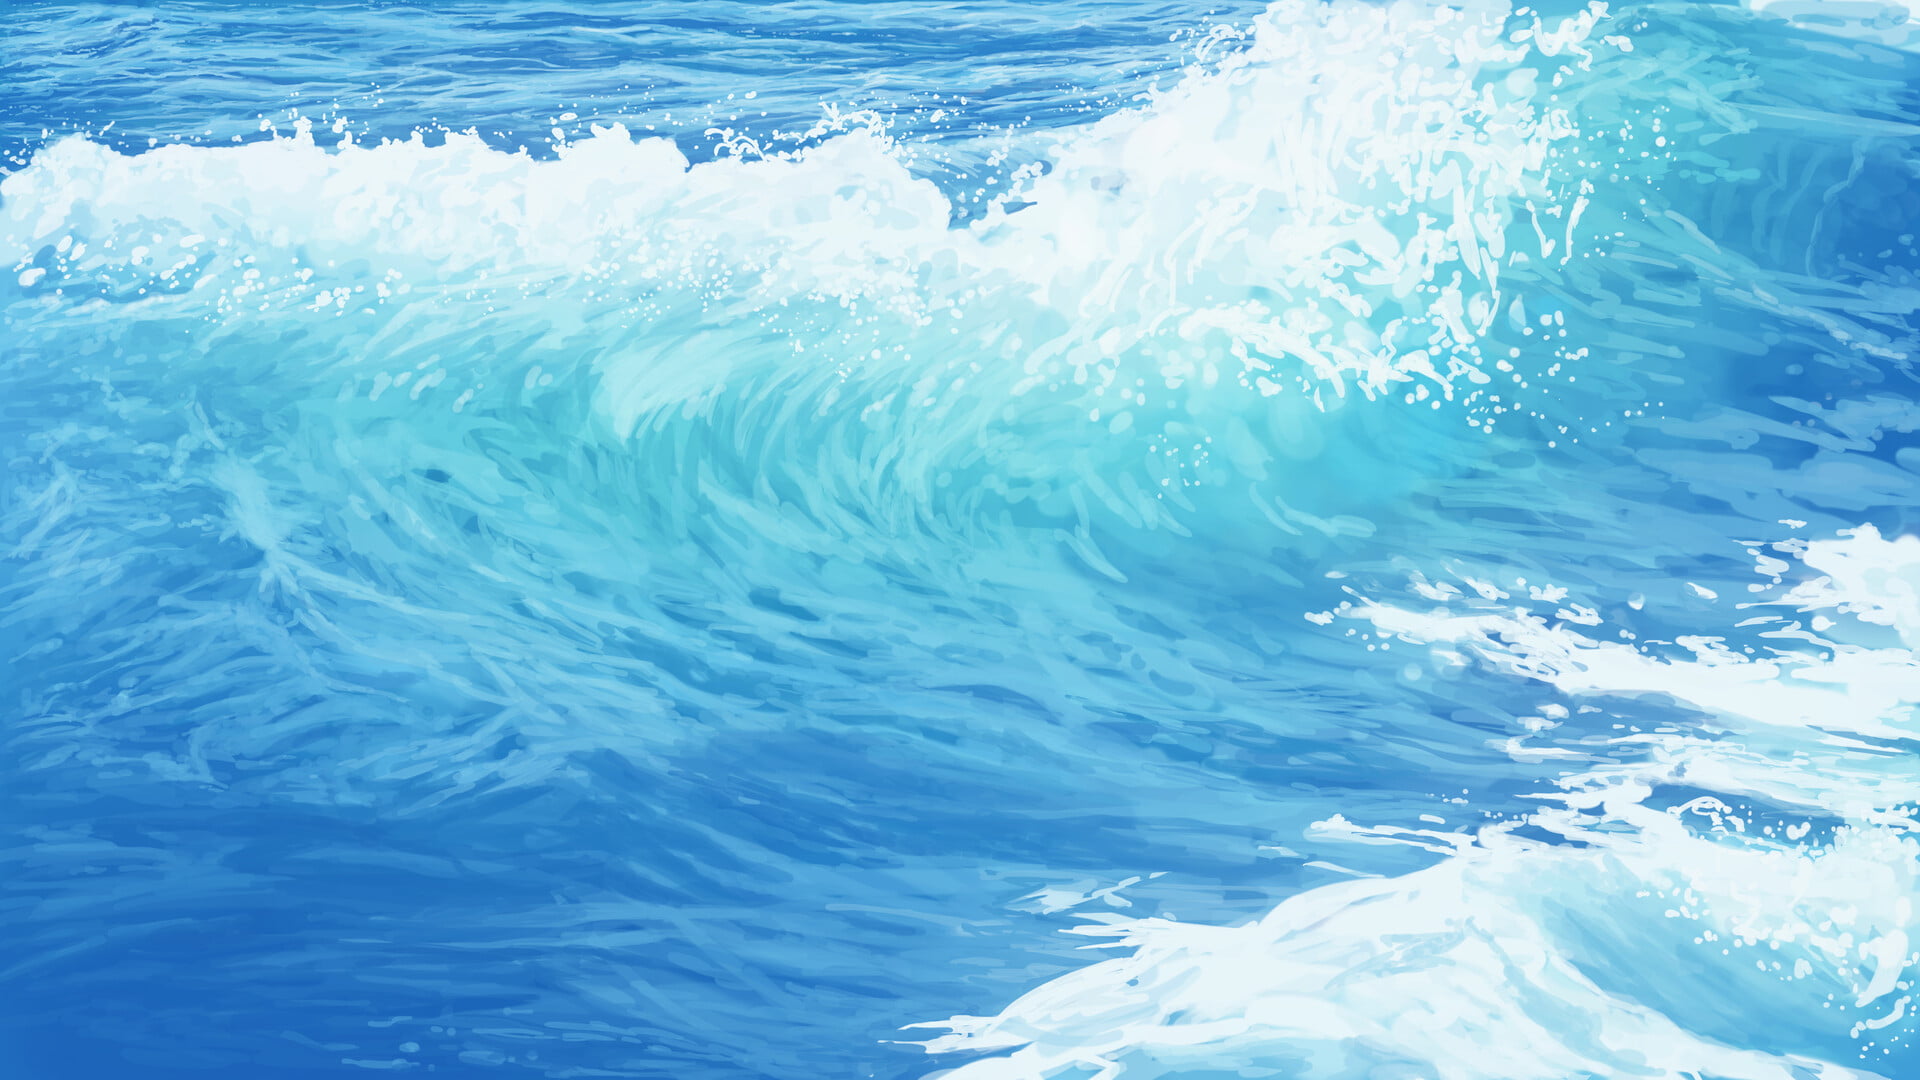 TJ (artist), digital art, nature, waves, sea